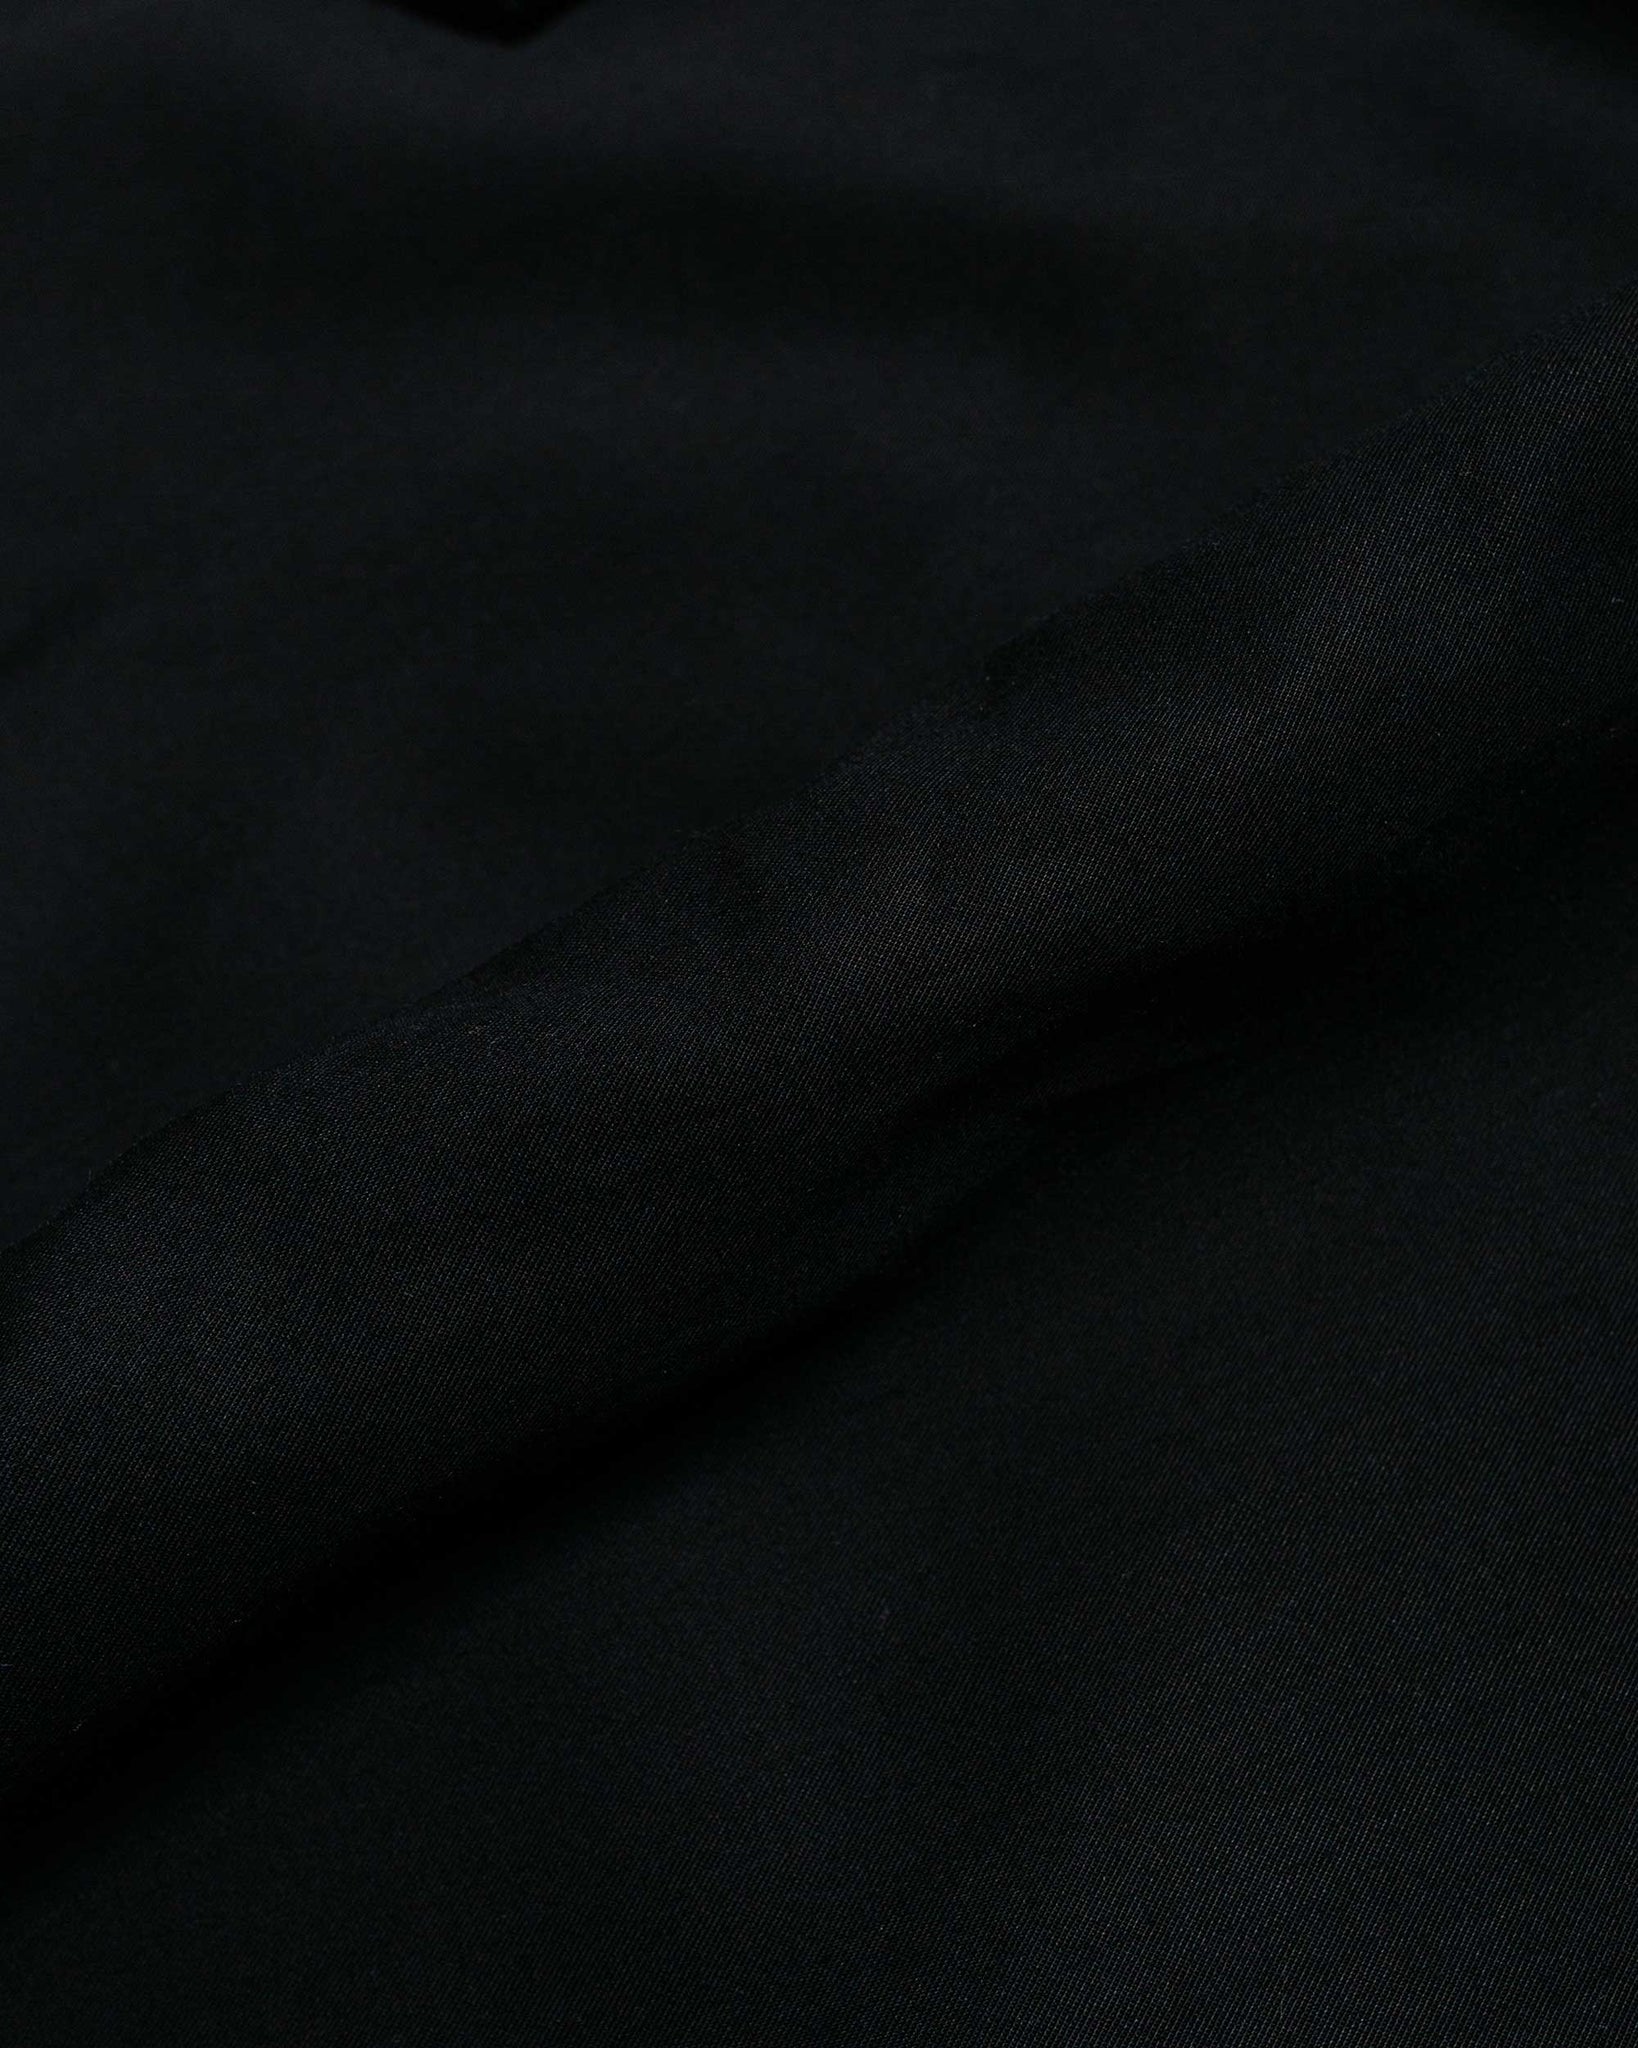 Carhartt W.I.P. Ablaze T-Shirt Black fabric